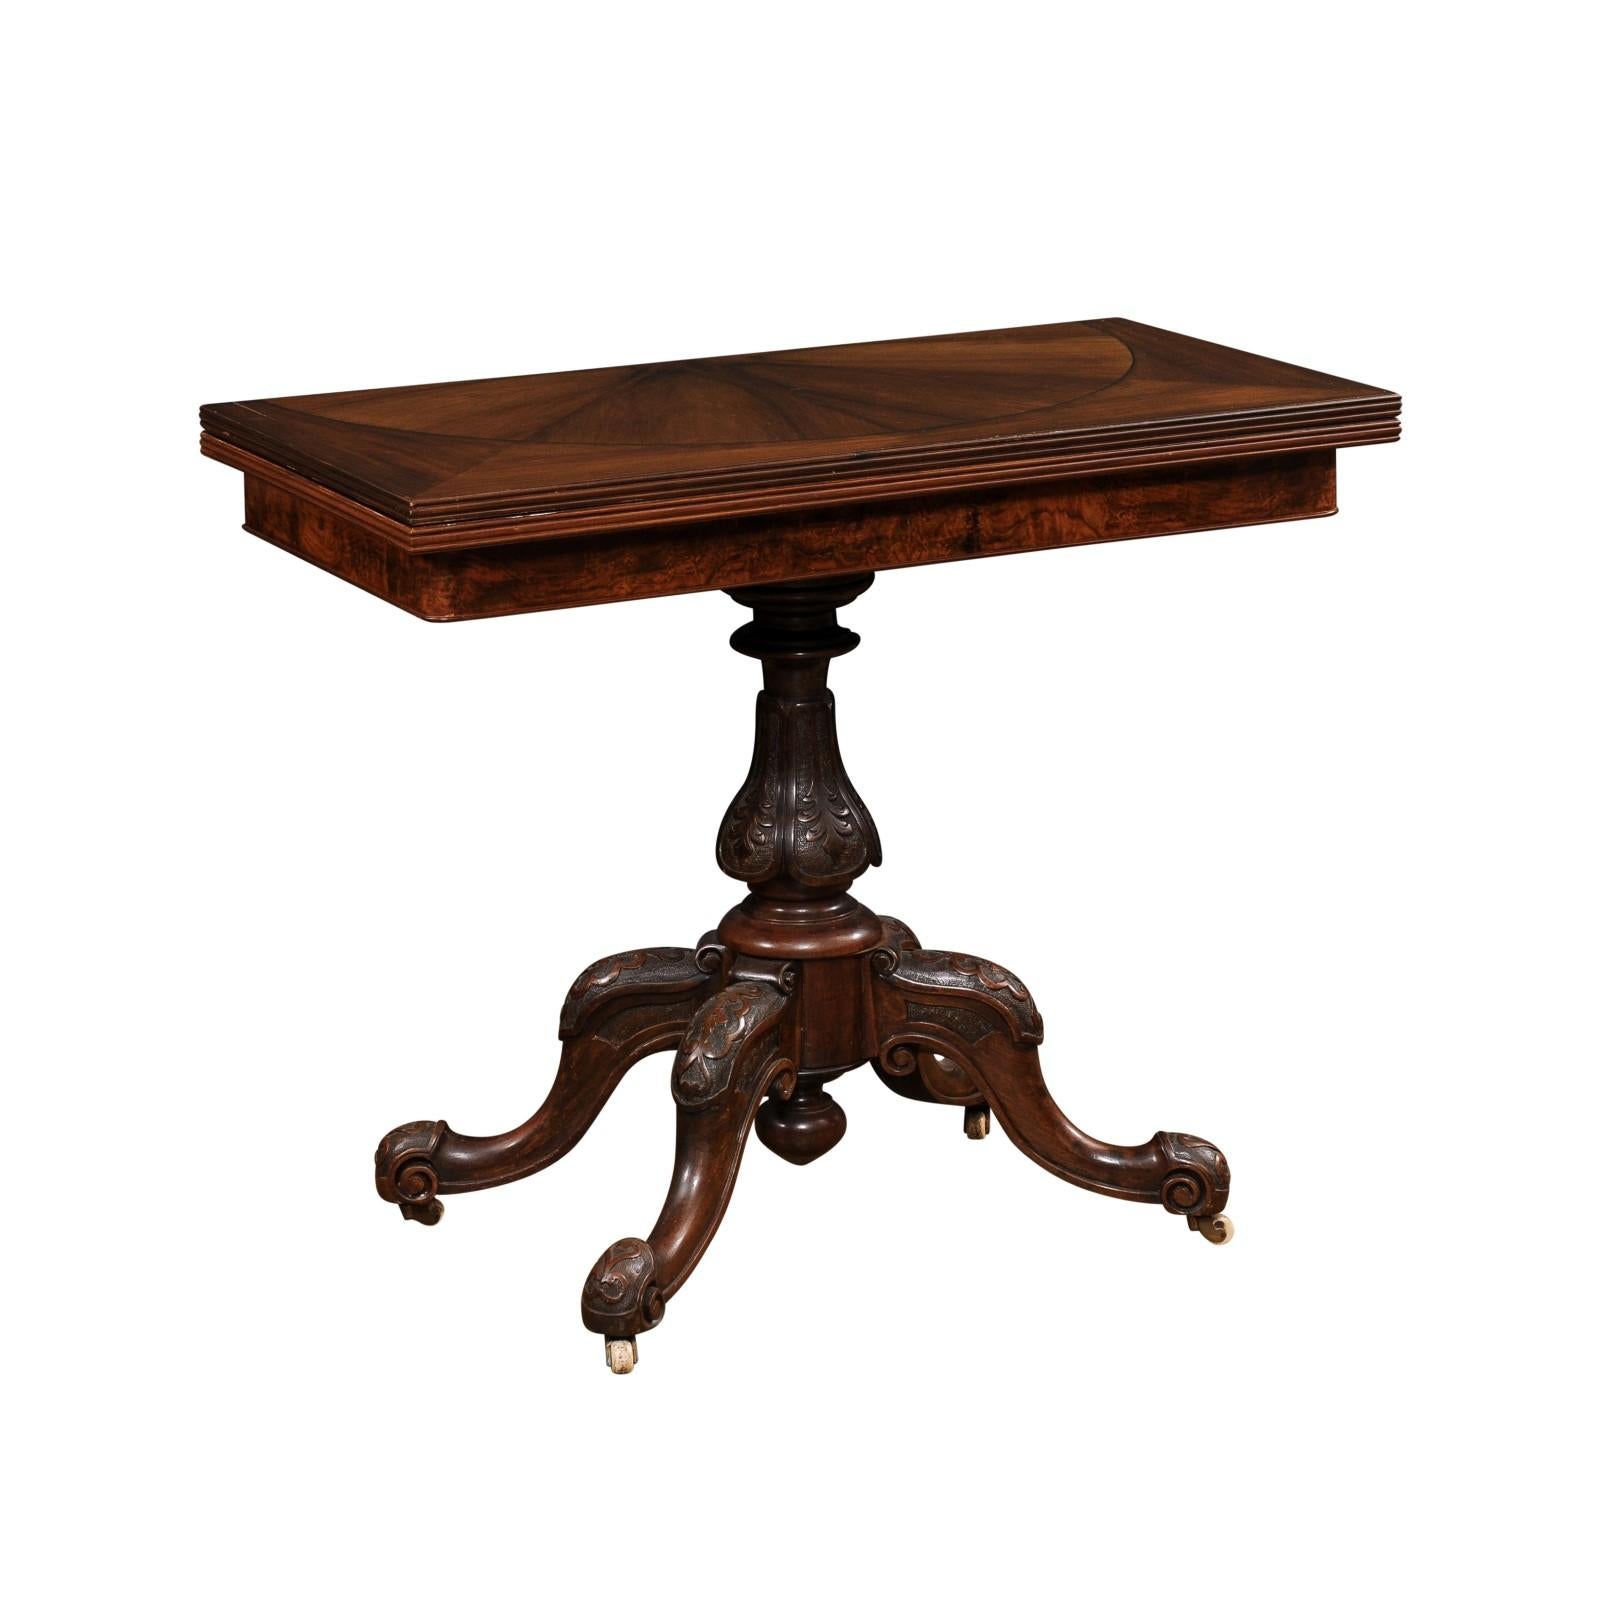 Ein englischer Spieltisch aus Nussbaum-Mahagoni aus der viktorianischen Zeit des 19. Jahrhunderts mit einer buchähnlichen Platte und einem geschnitzten Sockel auf Rollen. Tauchen Sie ein in die Eleganz der viktorianischen Ära mit diesem exquisiten